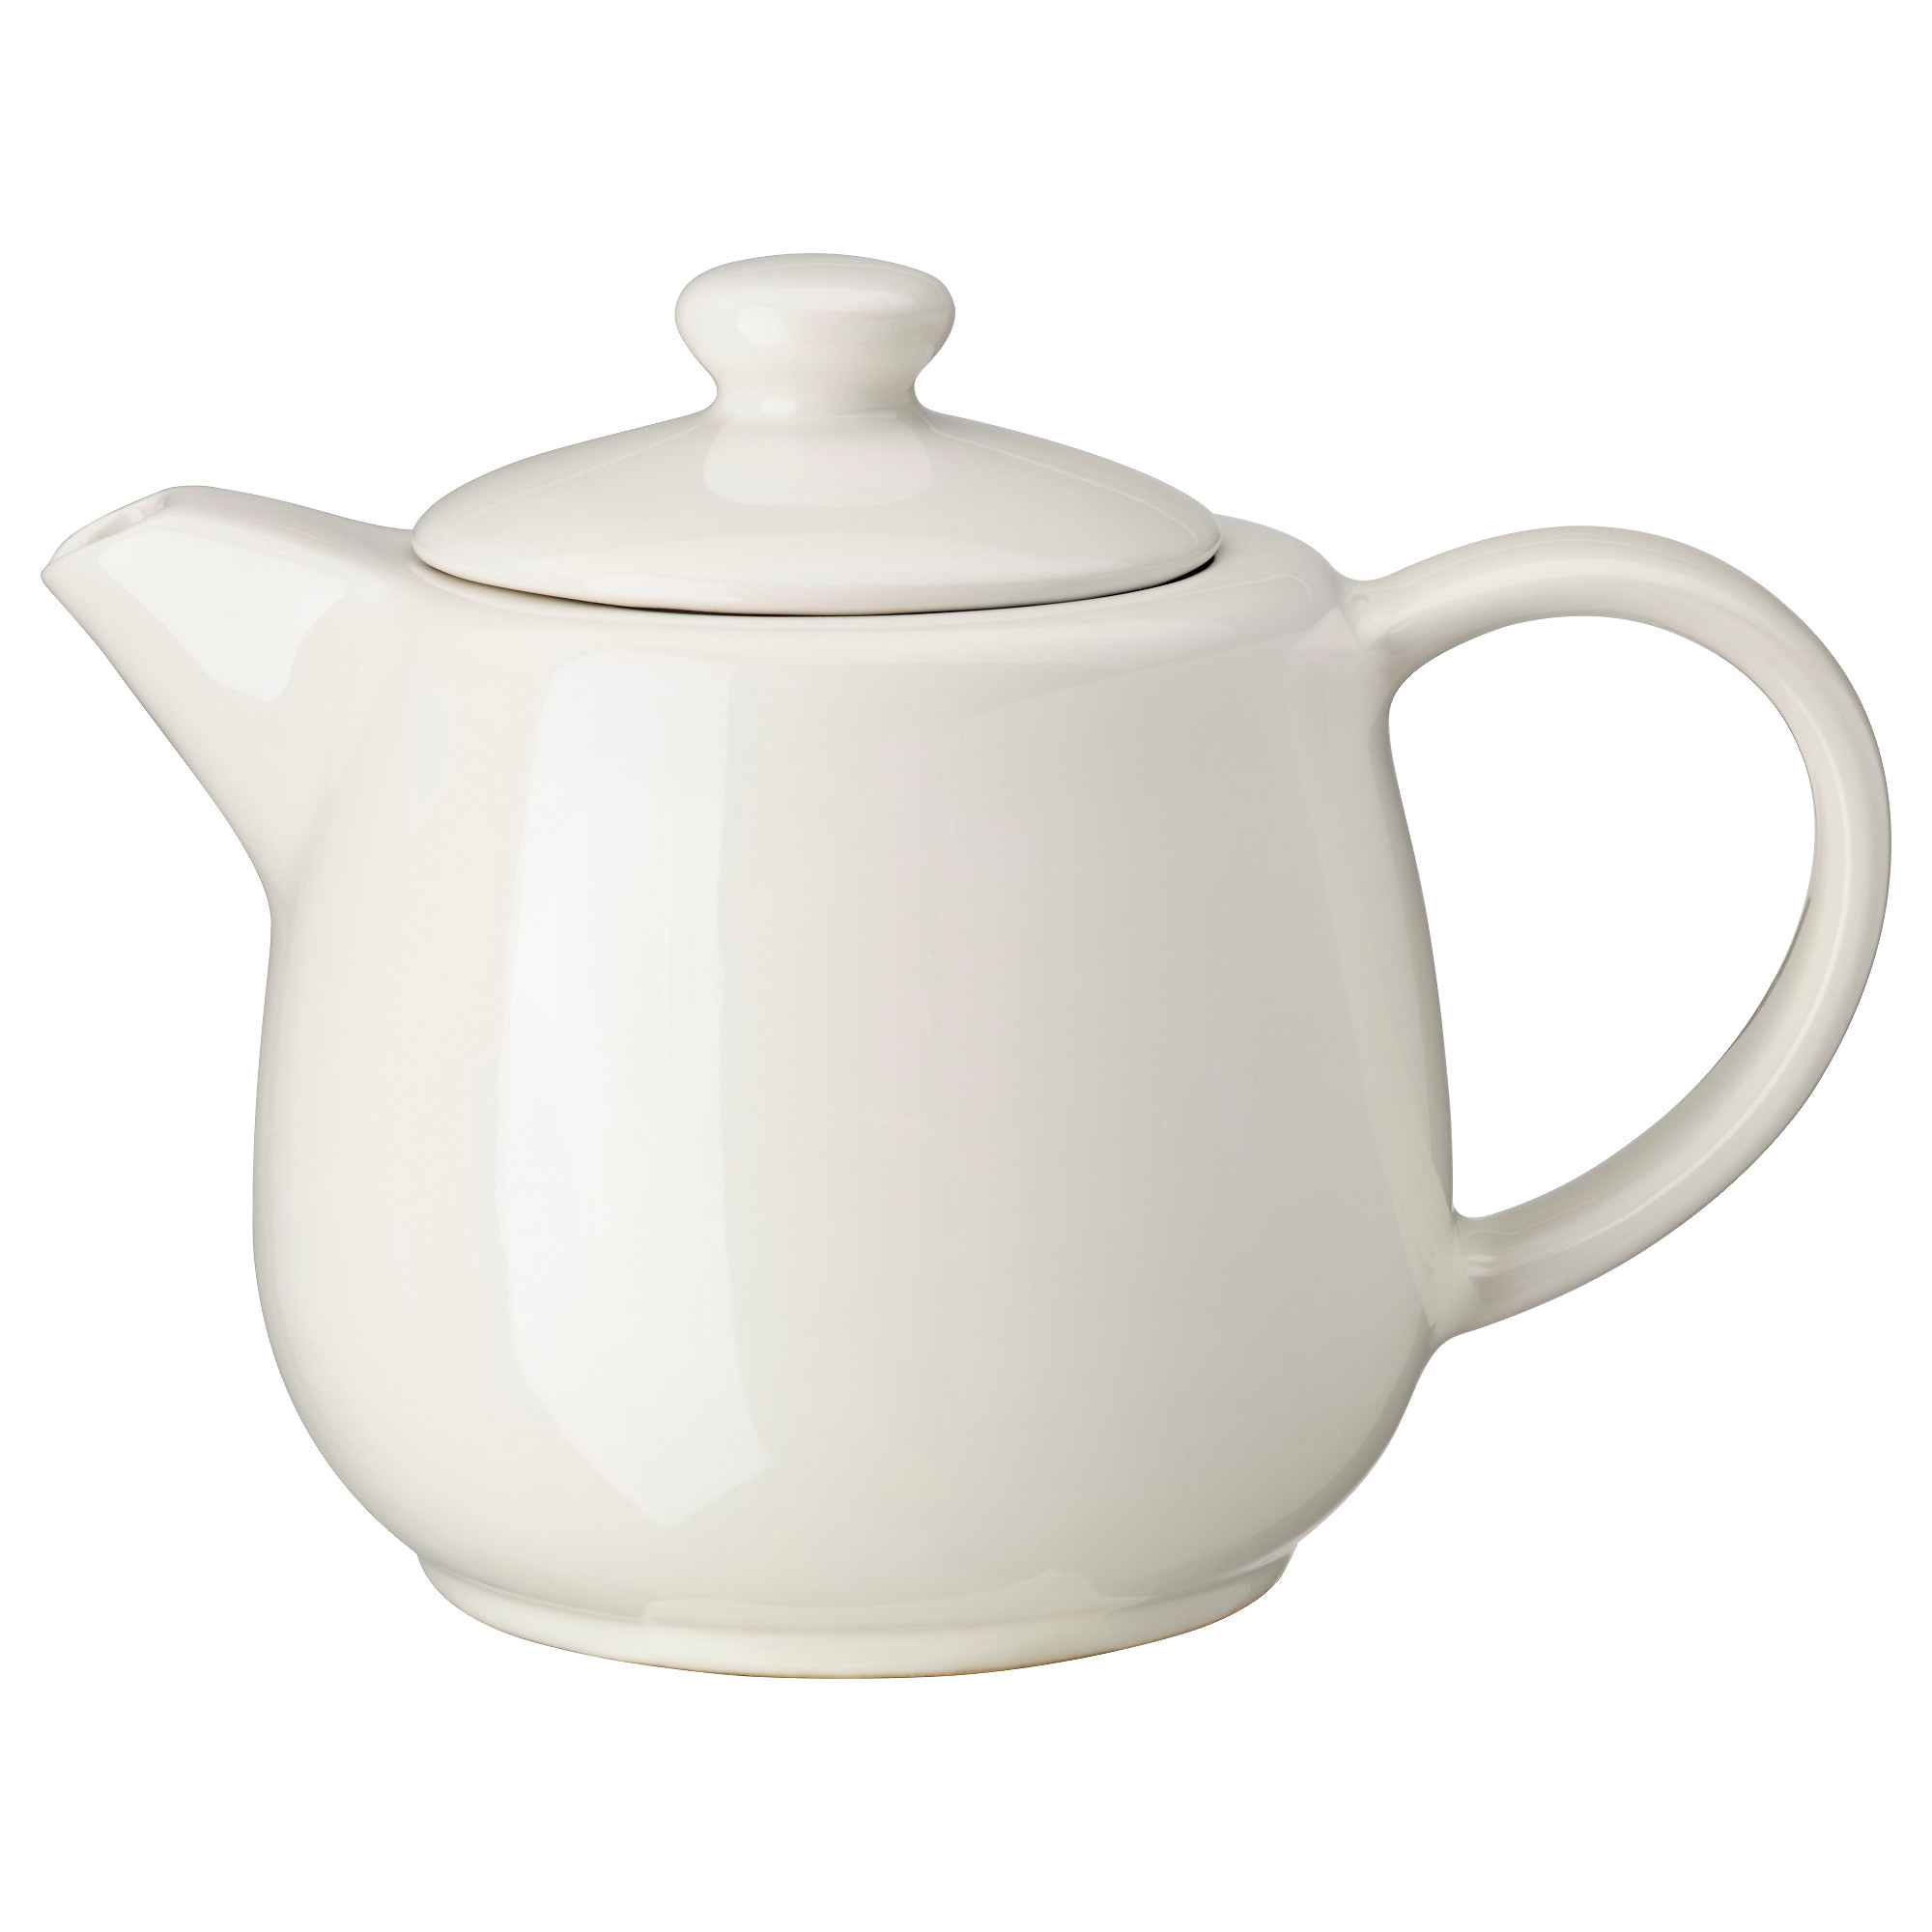 VARDAGEN teapot